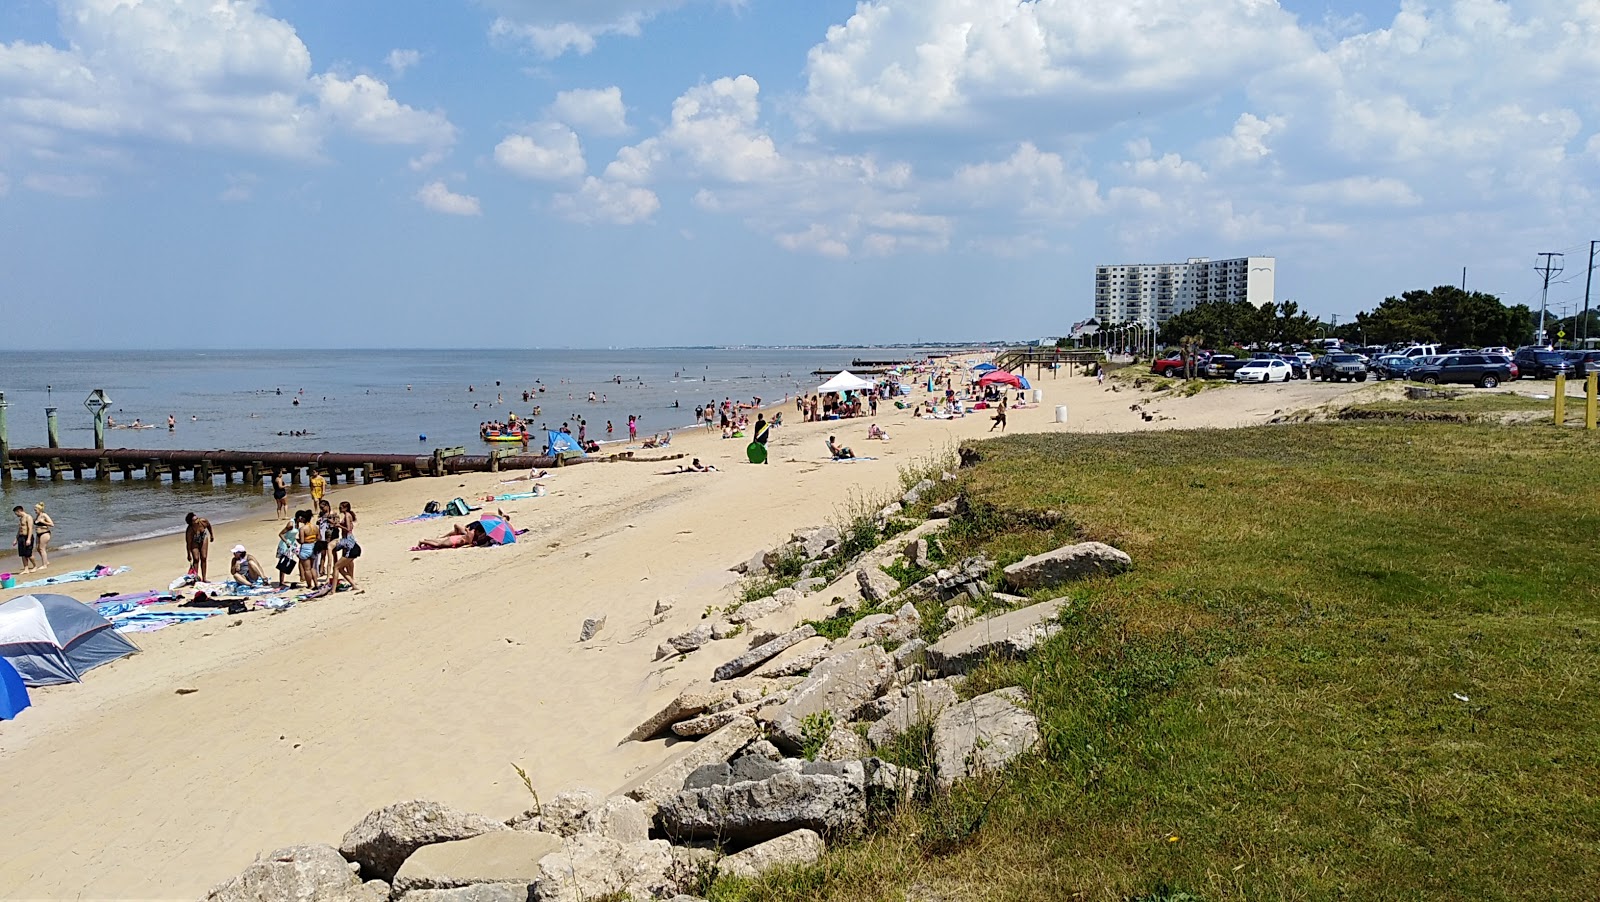 Fotografie cu Ocean View beach - locul popular printre cunoscătorii de relaxare